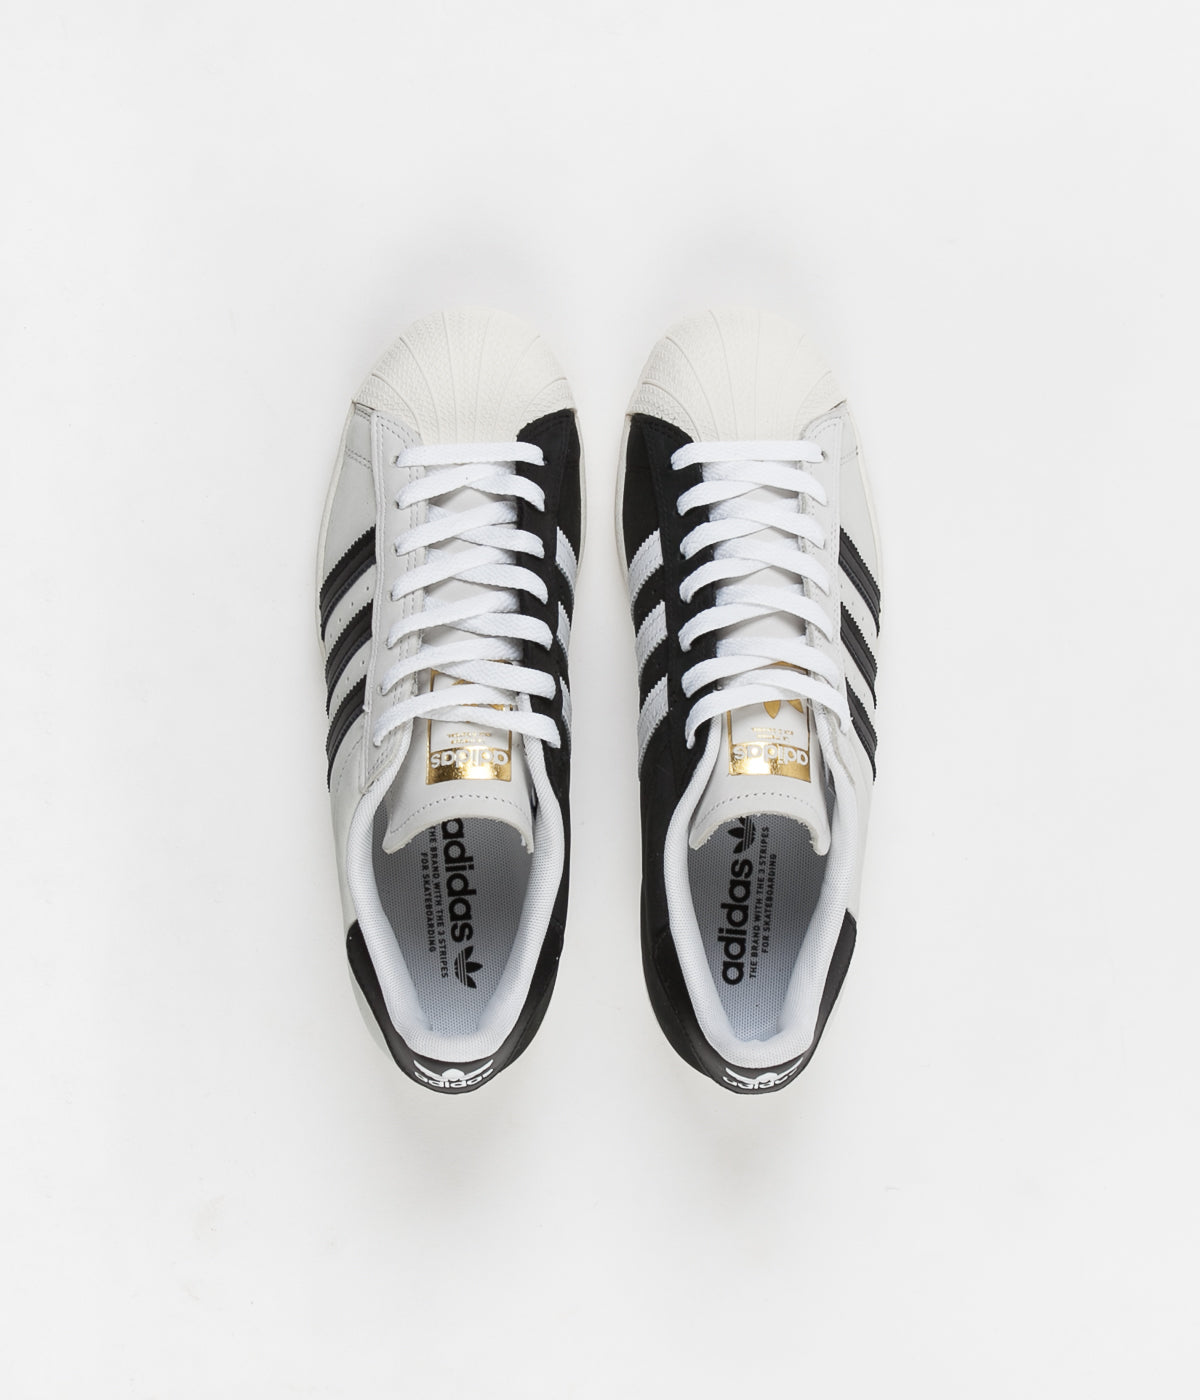 Adelante Reposición En honor Adidas Superstar Shoes - 2 Tone / White / Core Black / Gold Metallic |  Flatspot